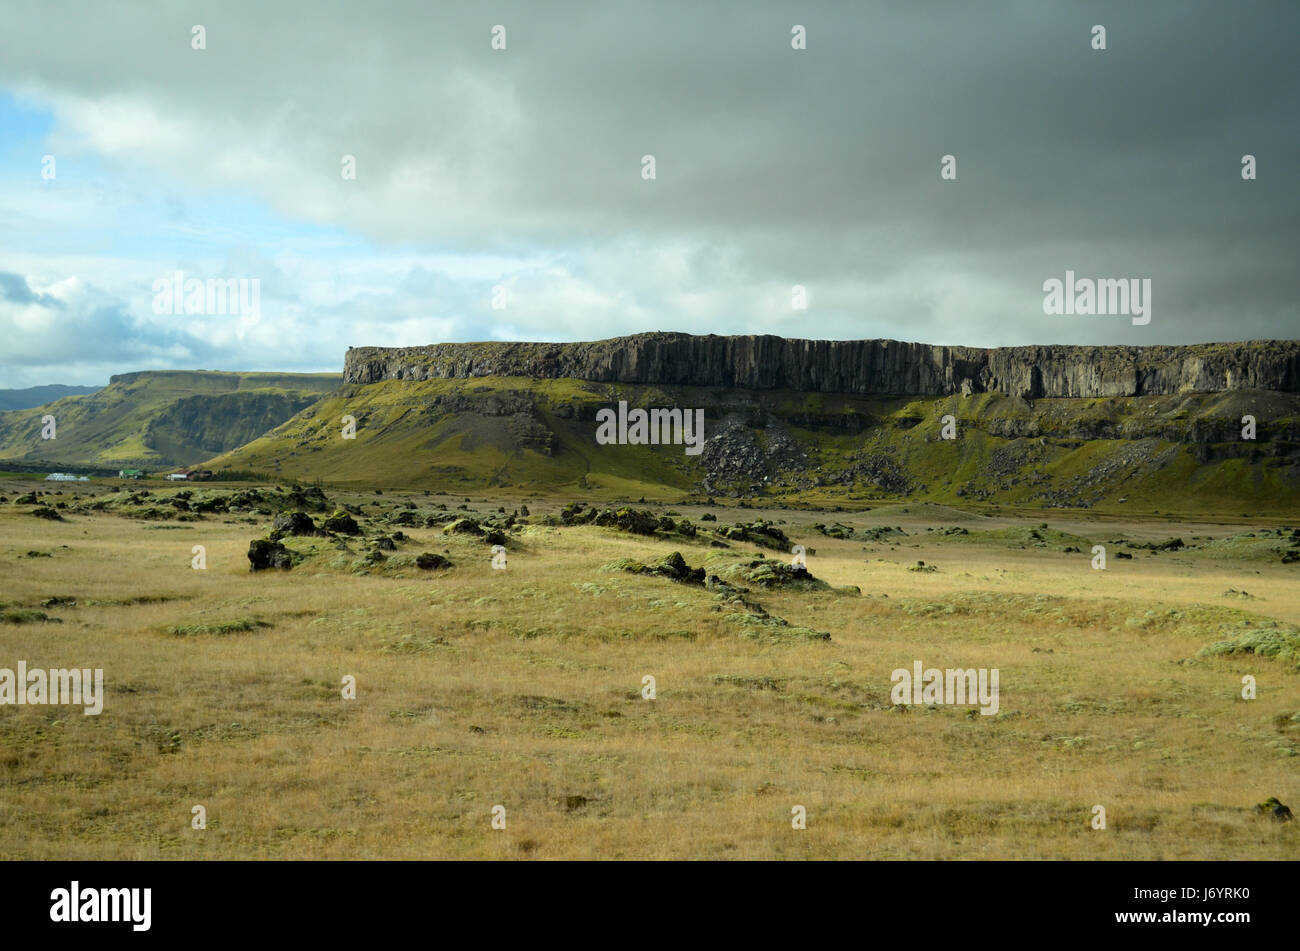 Mountain landscape, Iceland Stock Photo